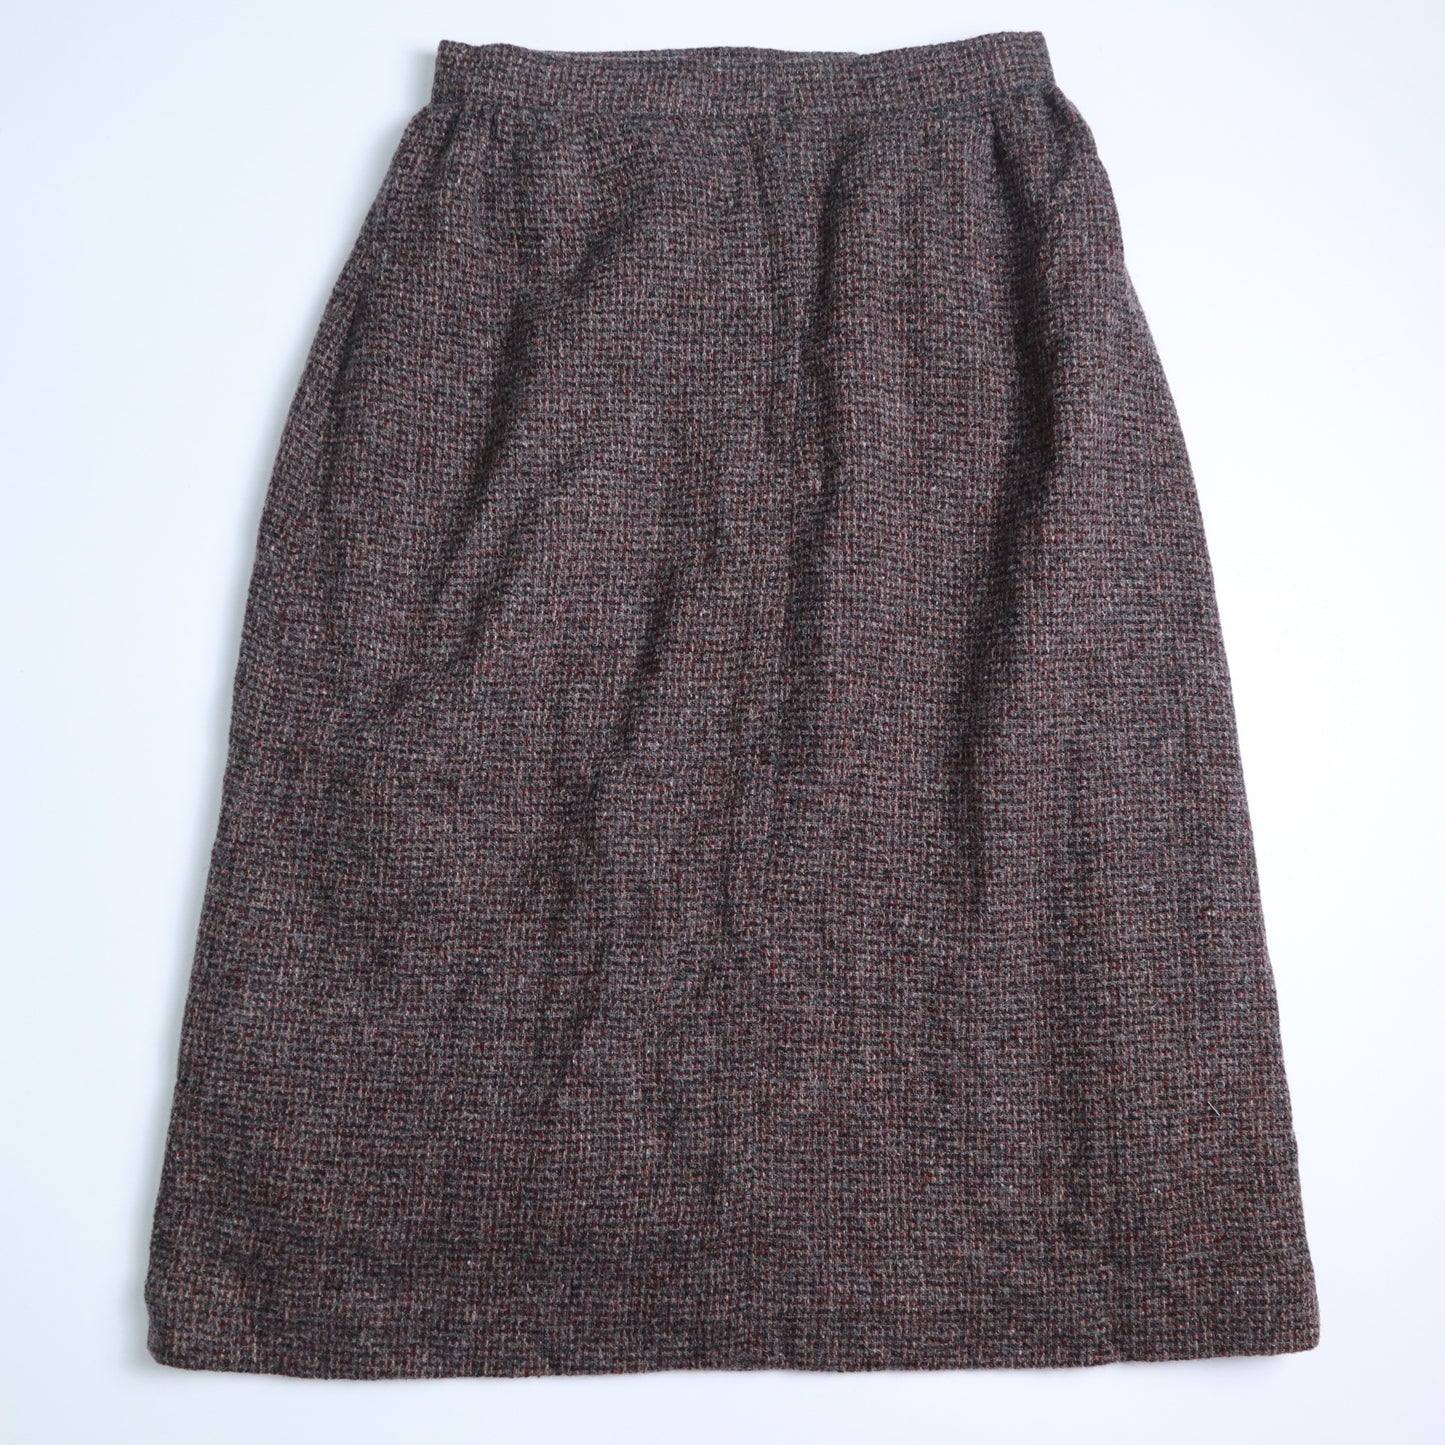 1980s US dark brown vintage wool skirt 